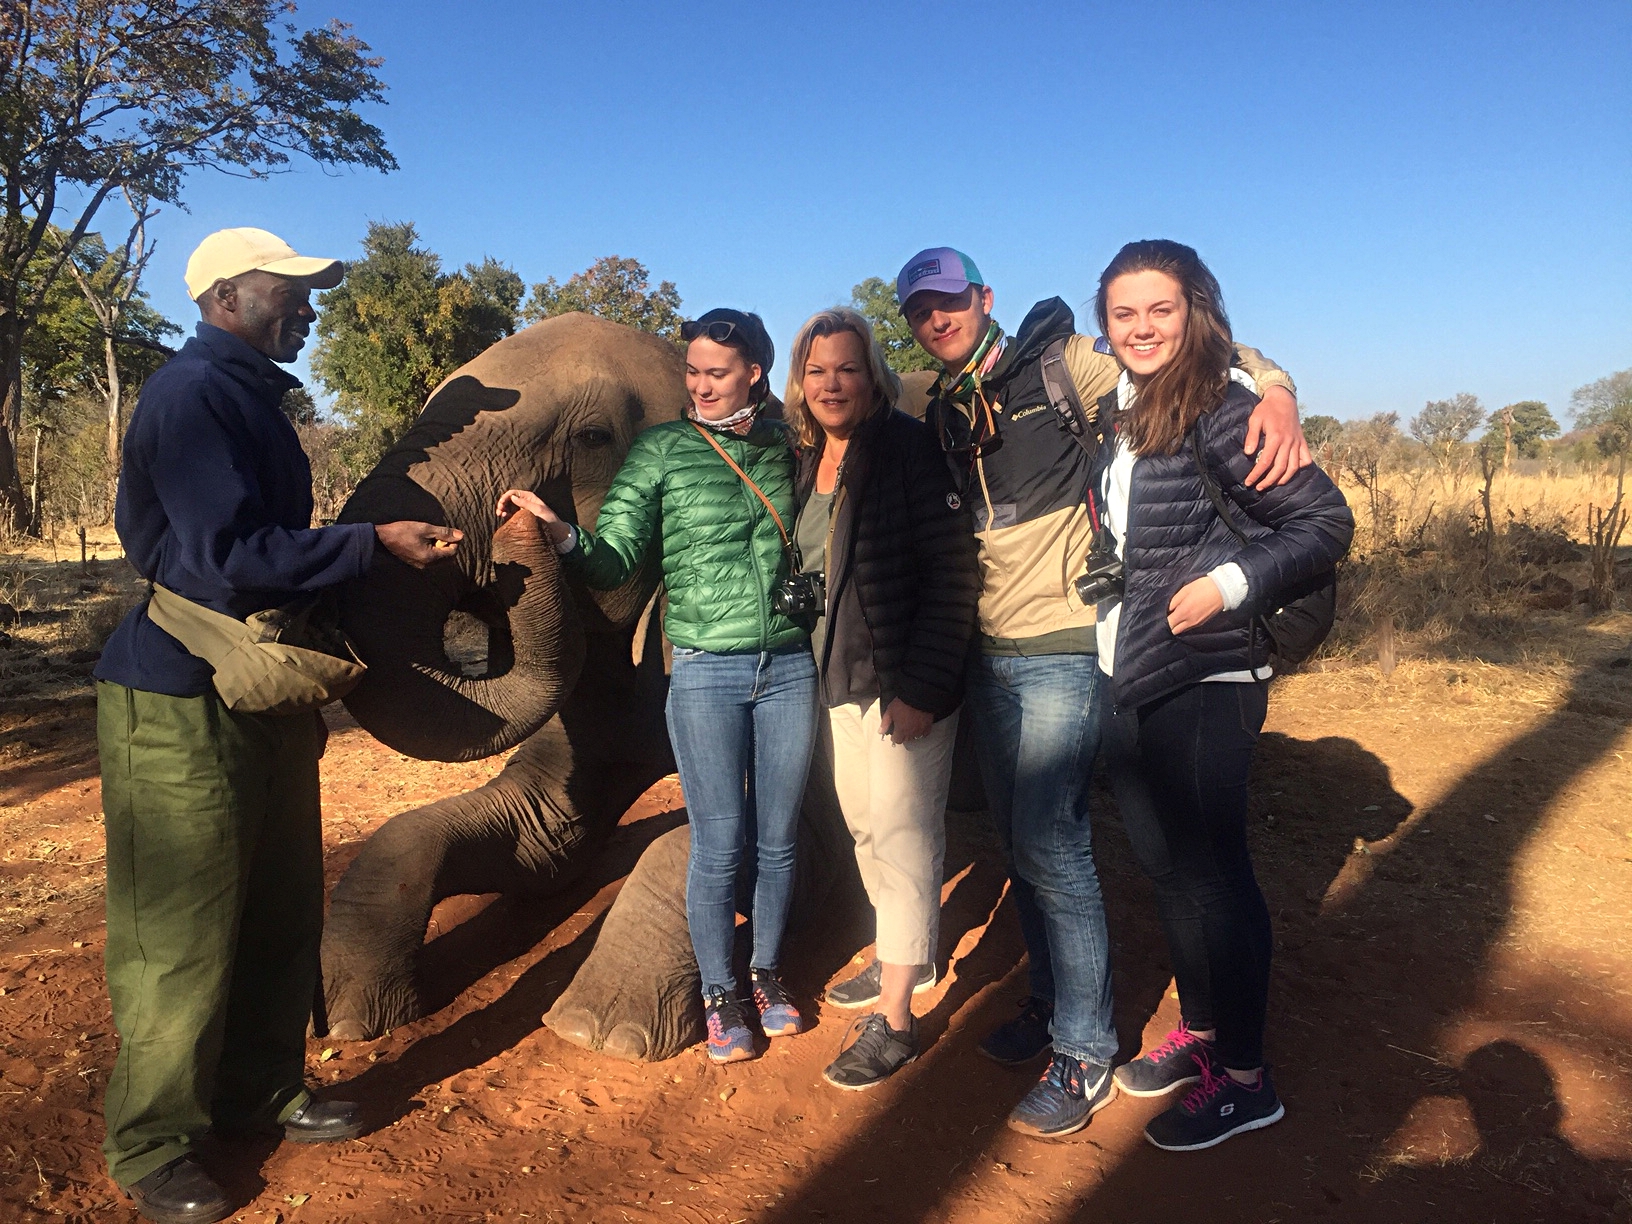 Celeste and Kate, Ellie, & Jack with elephants, Botzwana, Africa 6/16